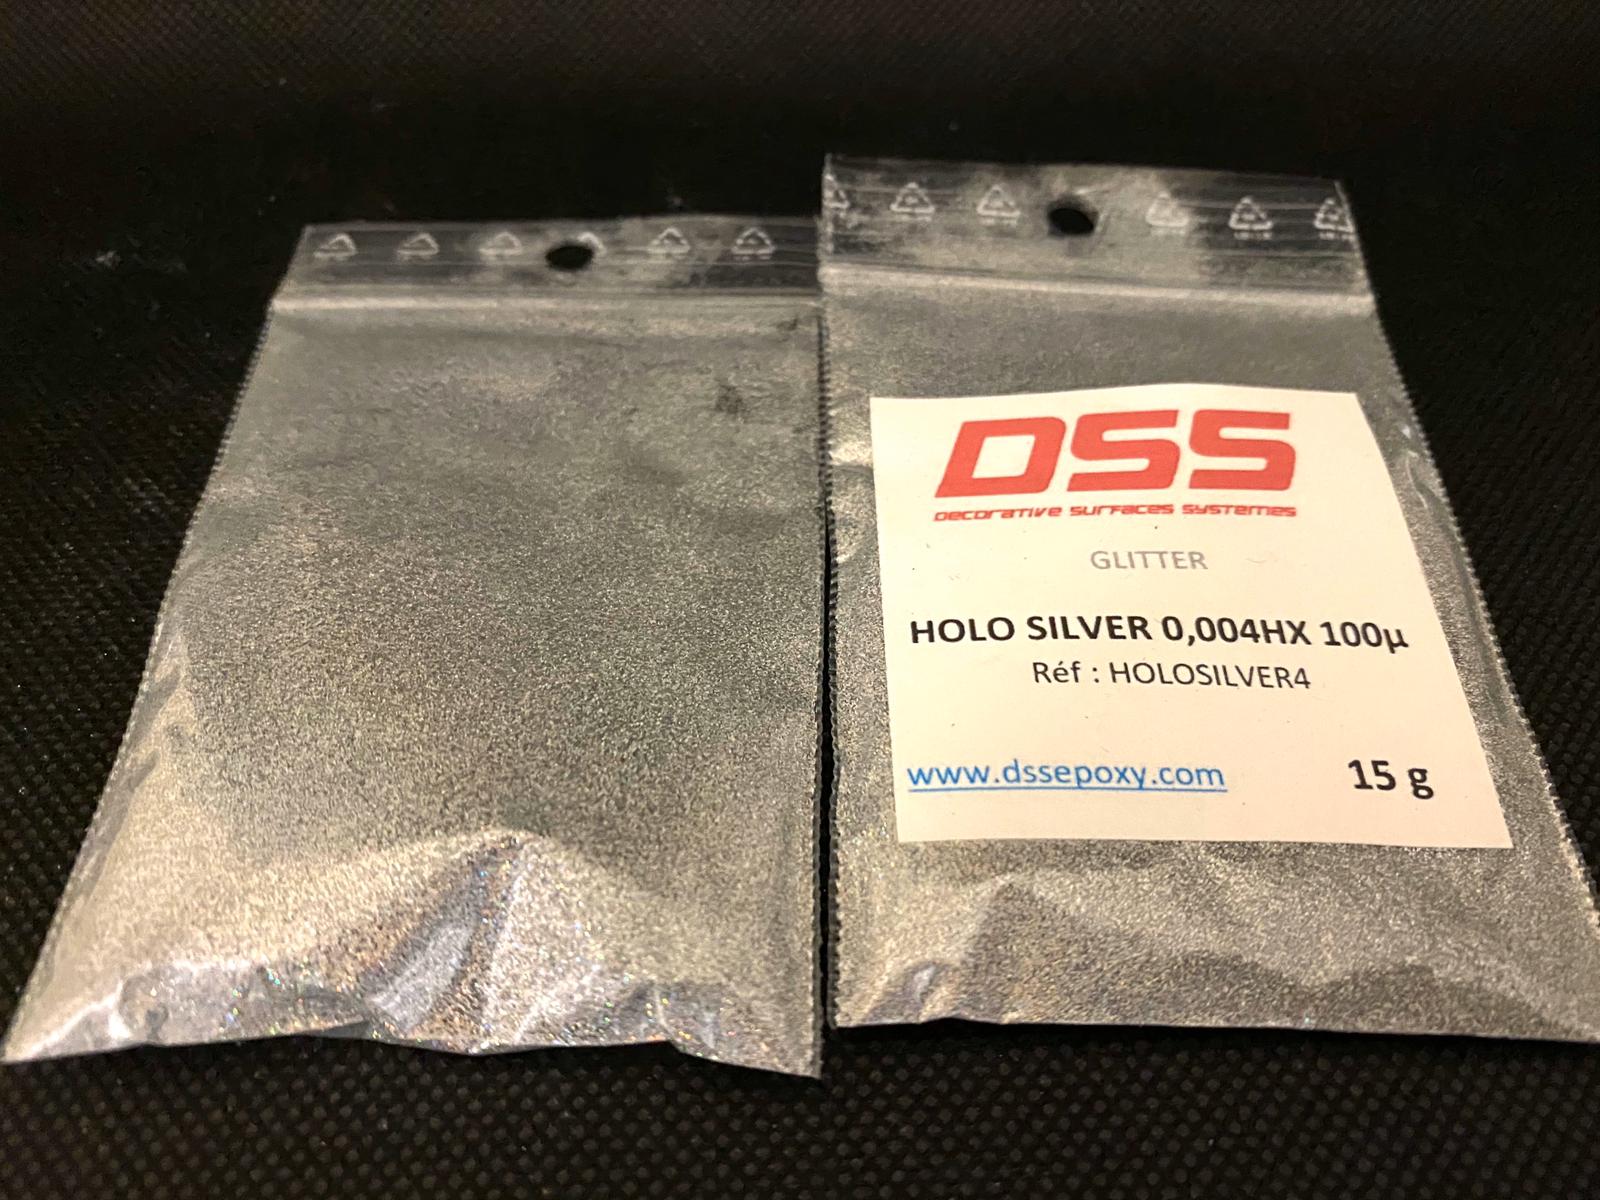 holo silver 0,004hx 100